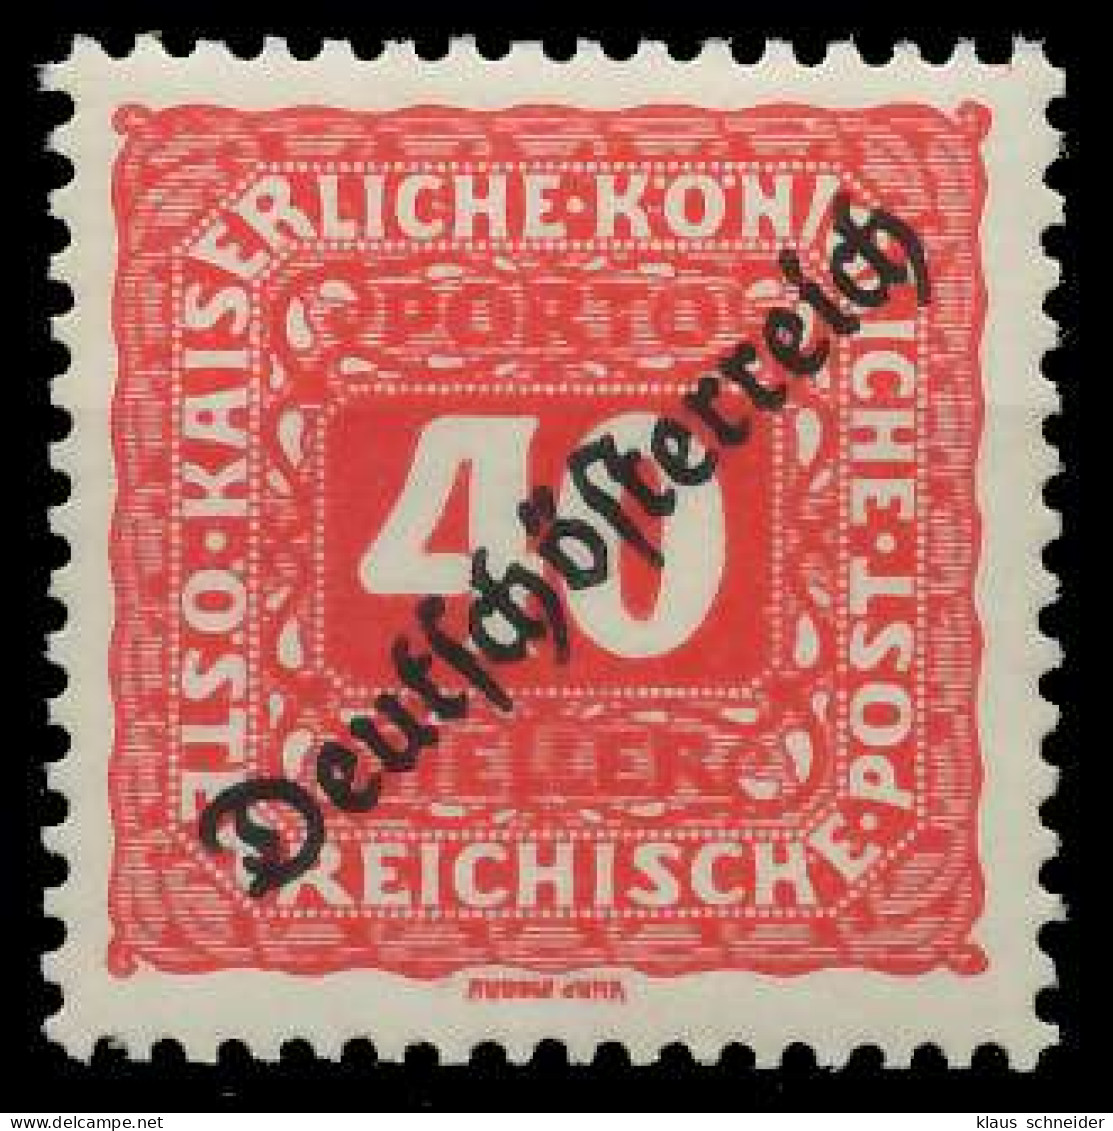 ÖSTERREICH PORTOMARKEN 1919 Nr 70 Postfrisch X74295E - Portomarken